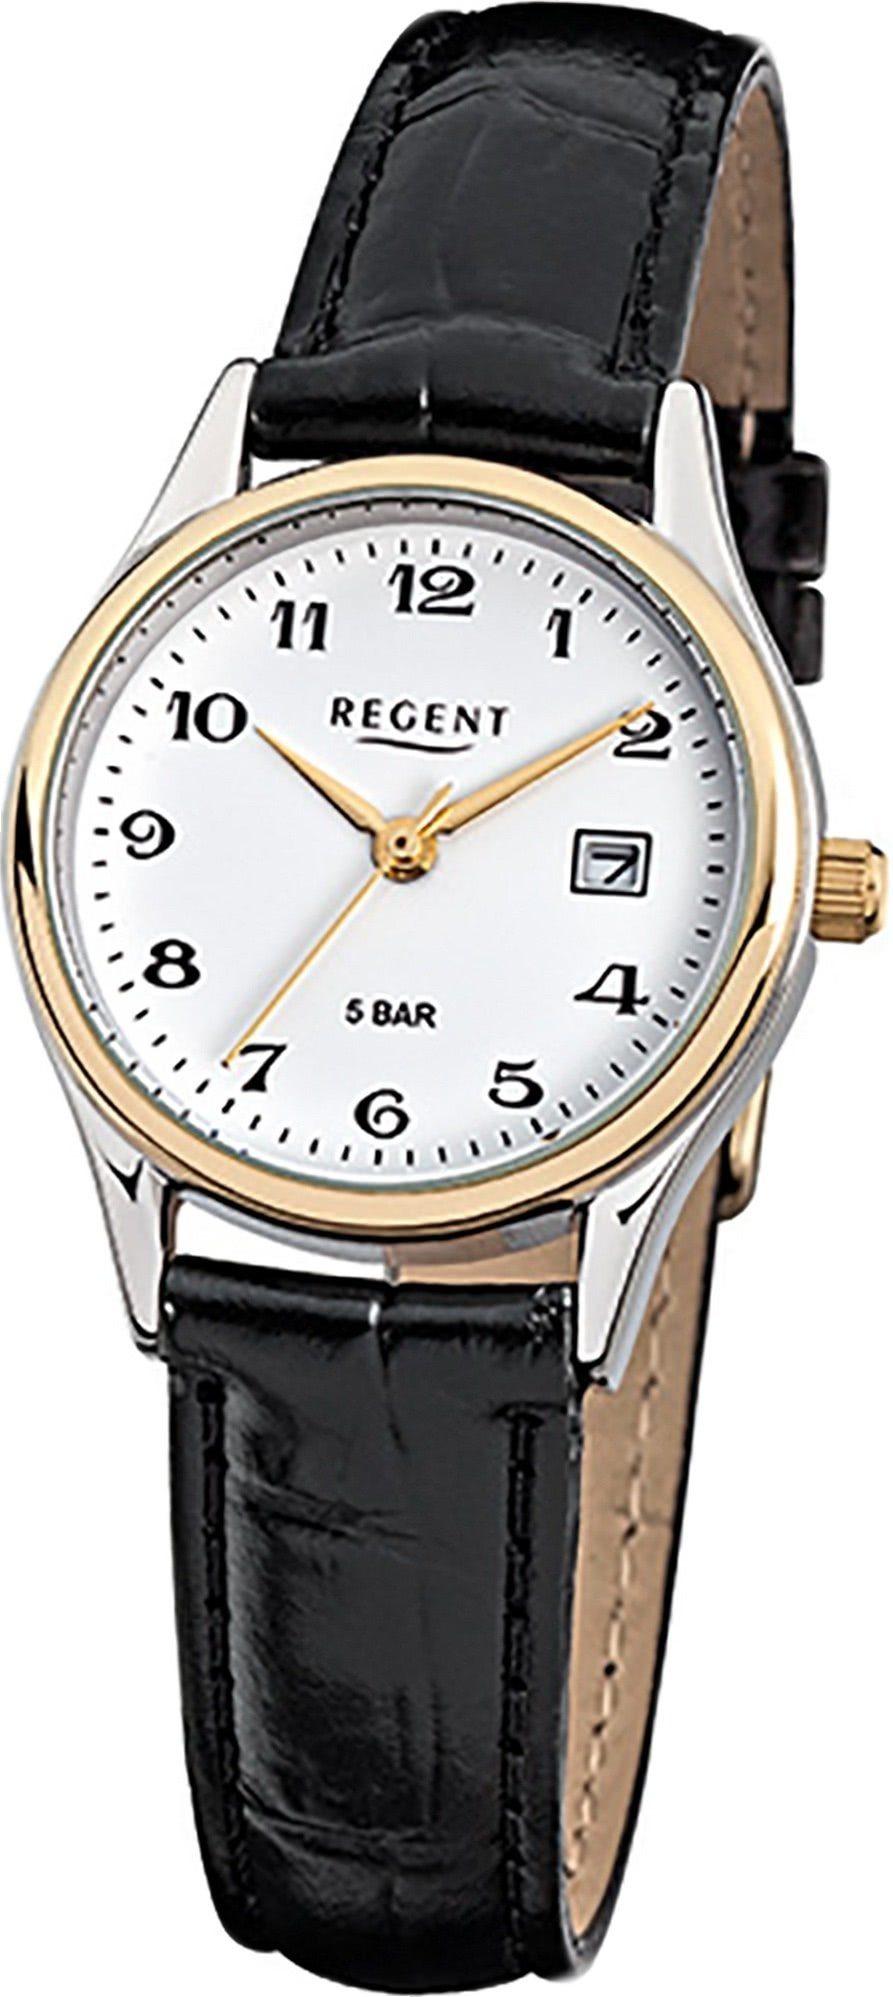 Regent Quarzuhr Regent Leder Damen Uhr F-834 Quarzuhr, Damenuhr Lederarmband schwarz, rundes Gehäuse, klein (ca. 28mm)